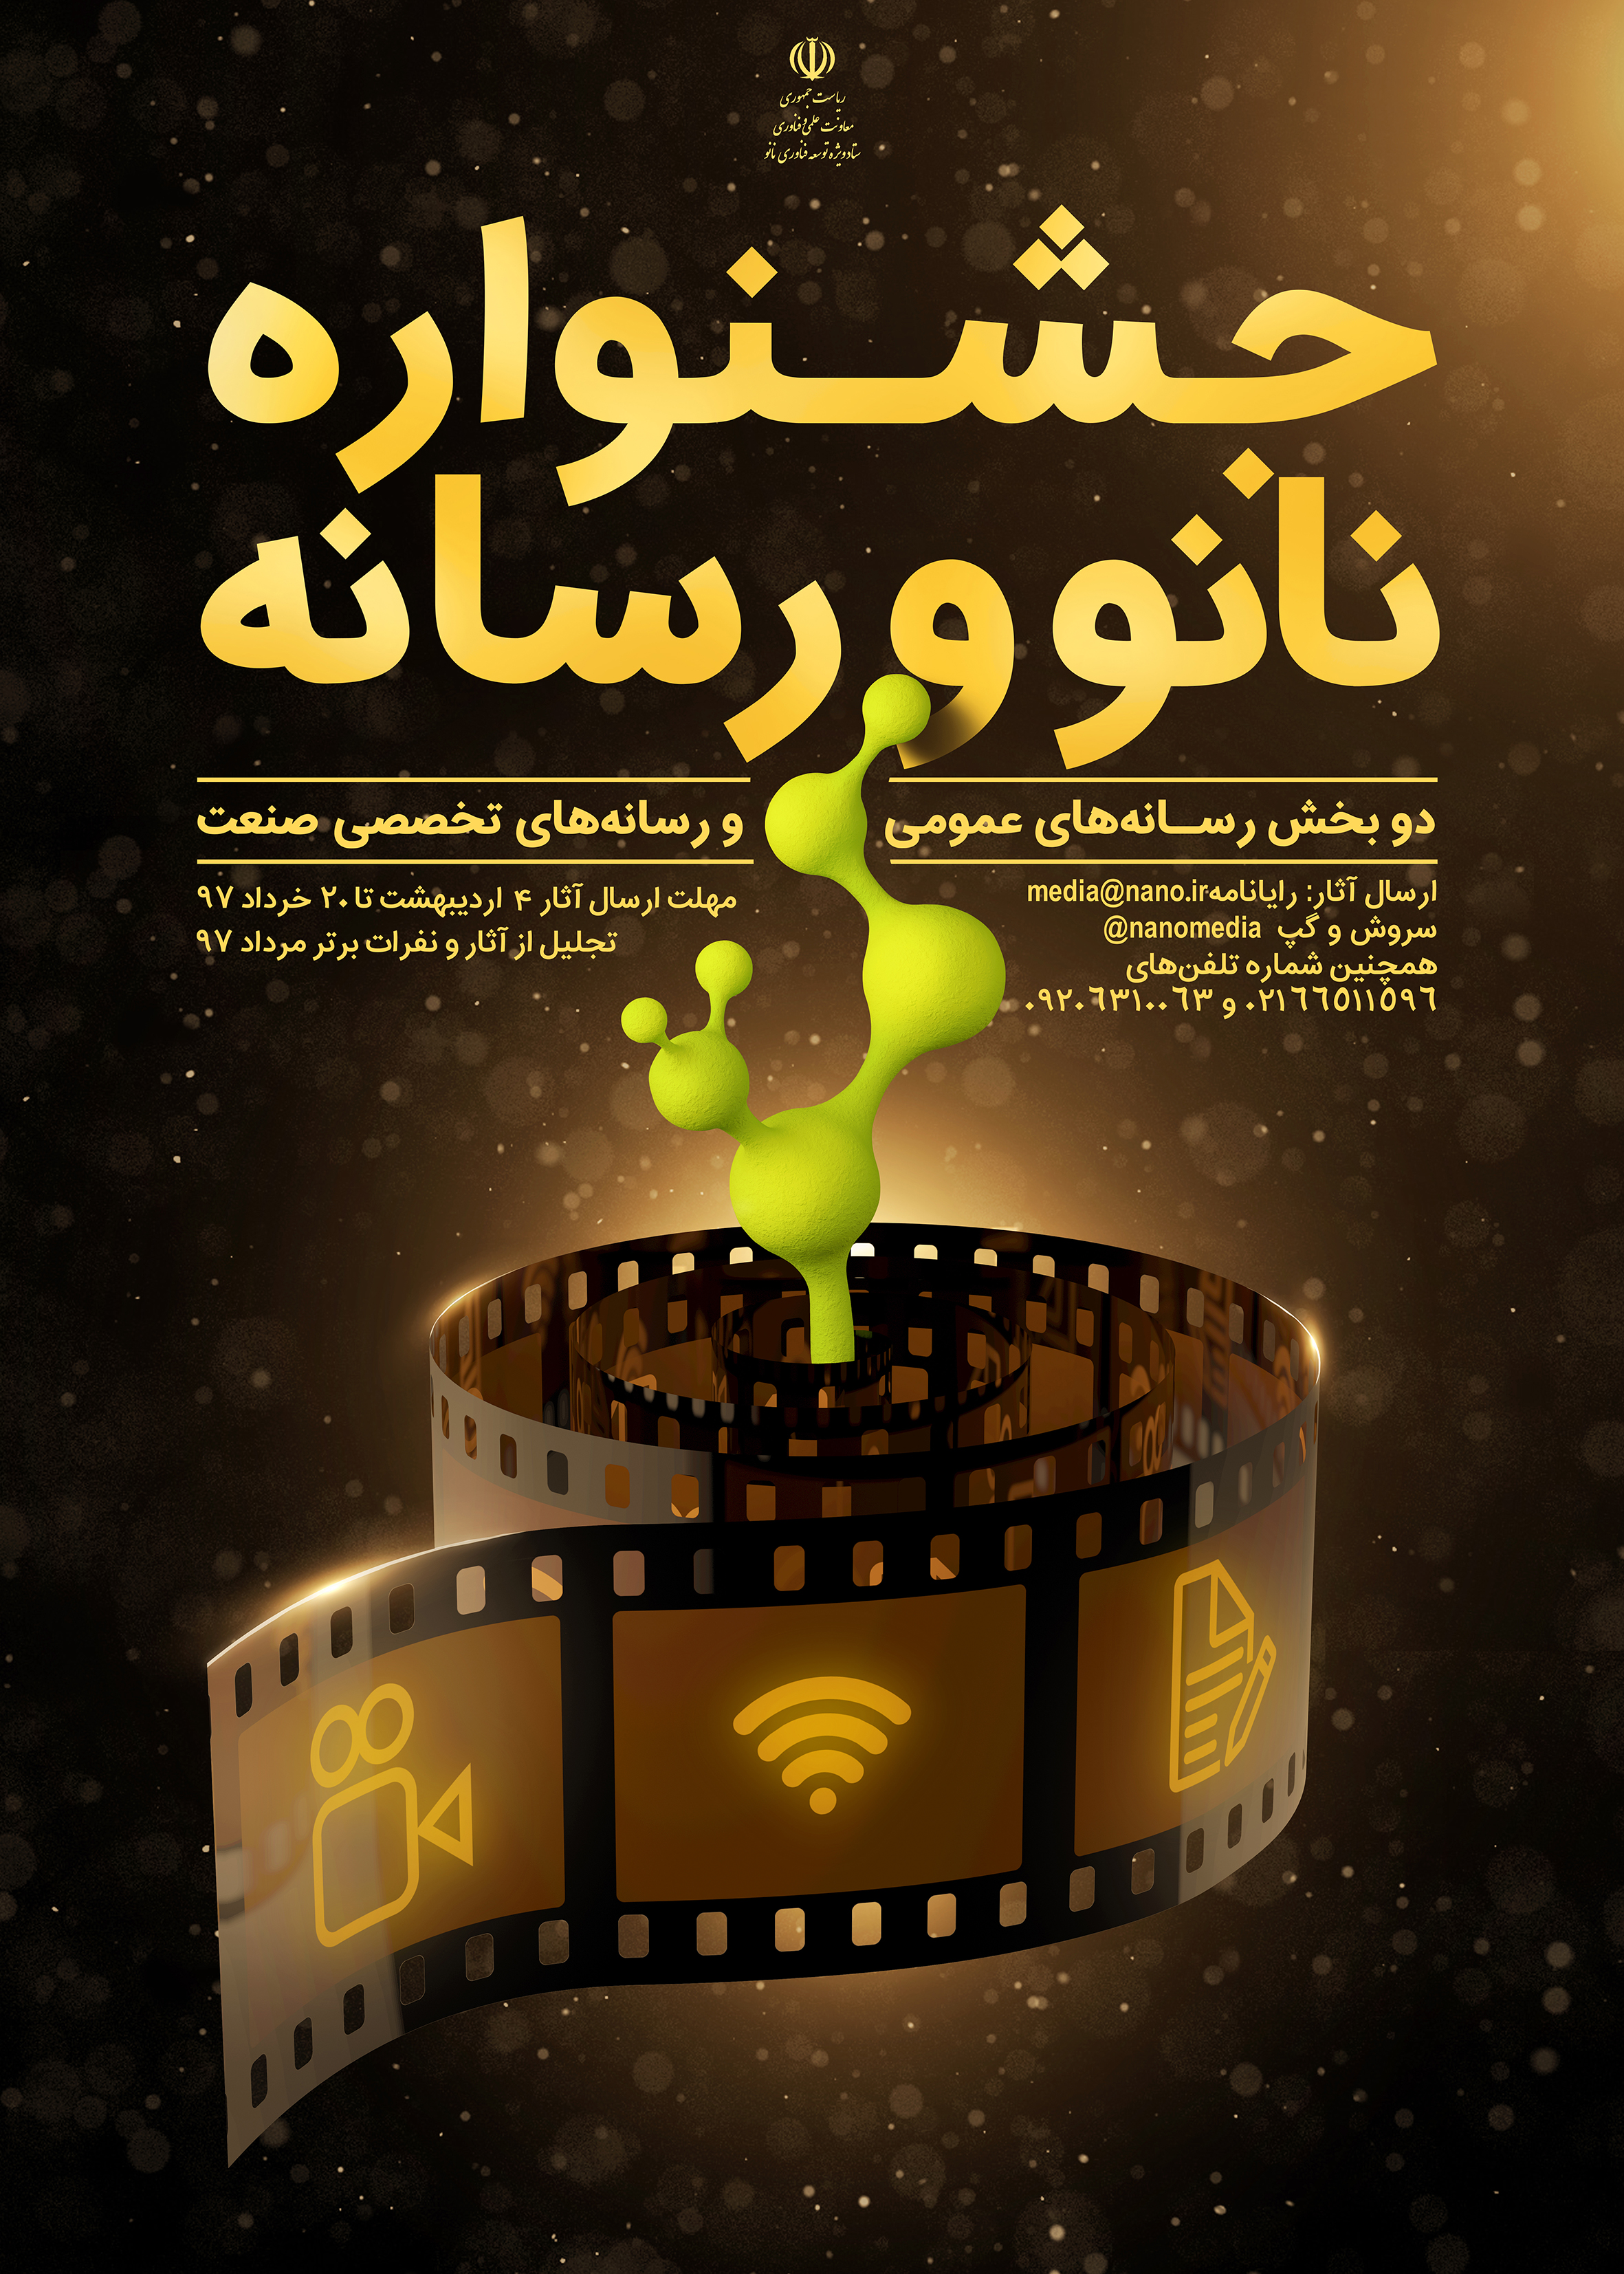 اعلام فراخوان جشنواره نانو و رسانه برای انتخاب برترین آثار